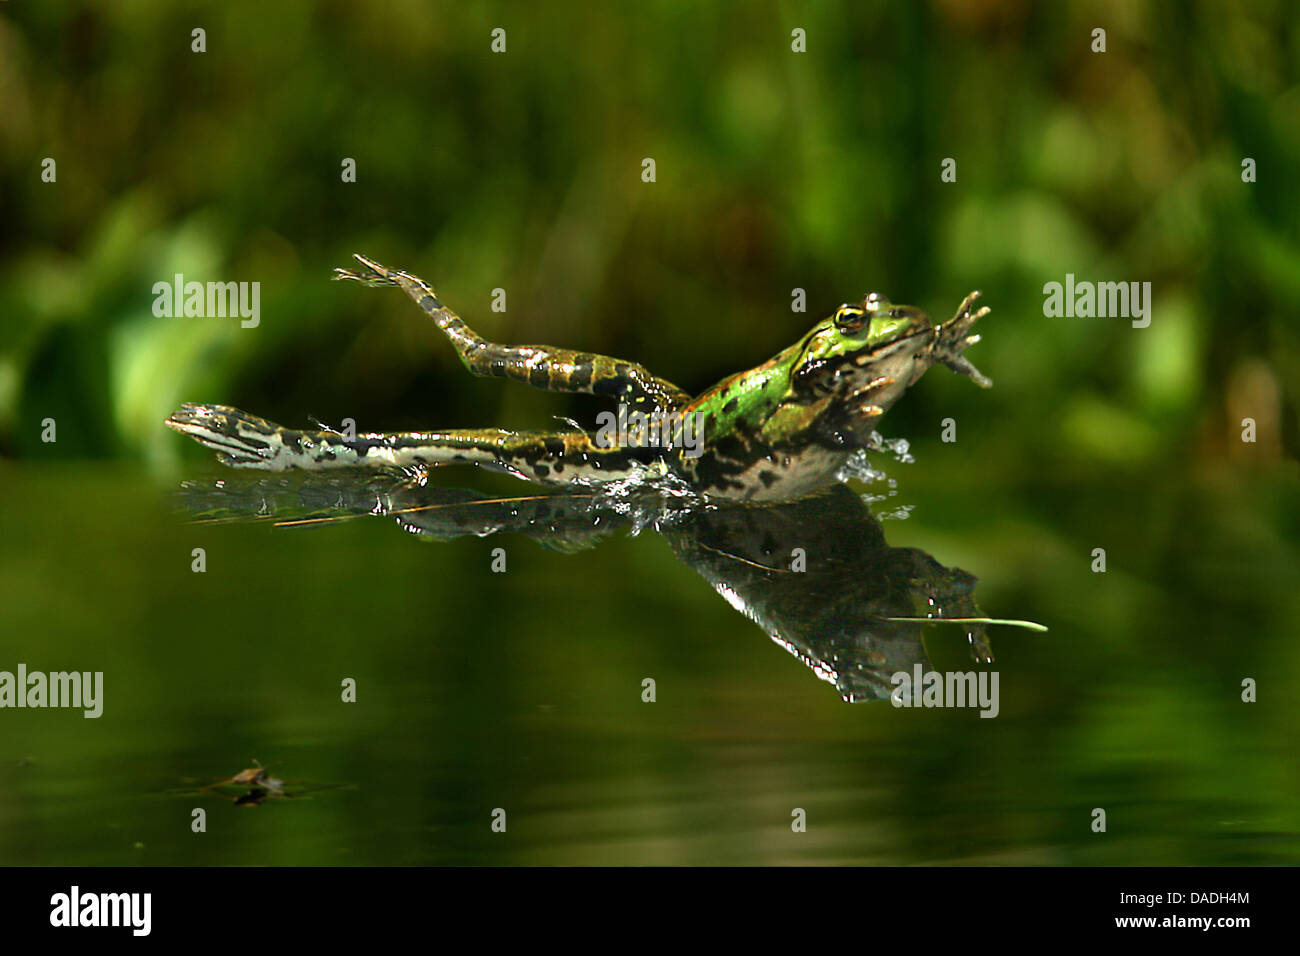 Unione rana verde, comune rana verde (Rana kl. esculenta, Rana esculenta), saltando in acqua, Germania Foto Stock